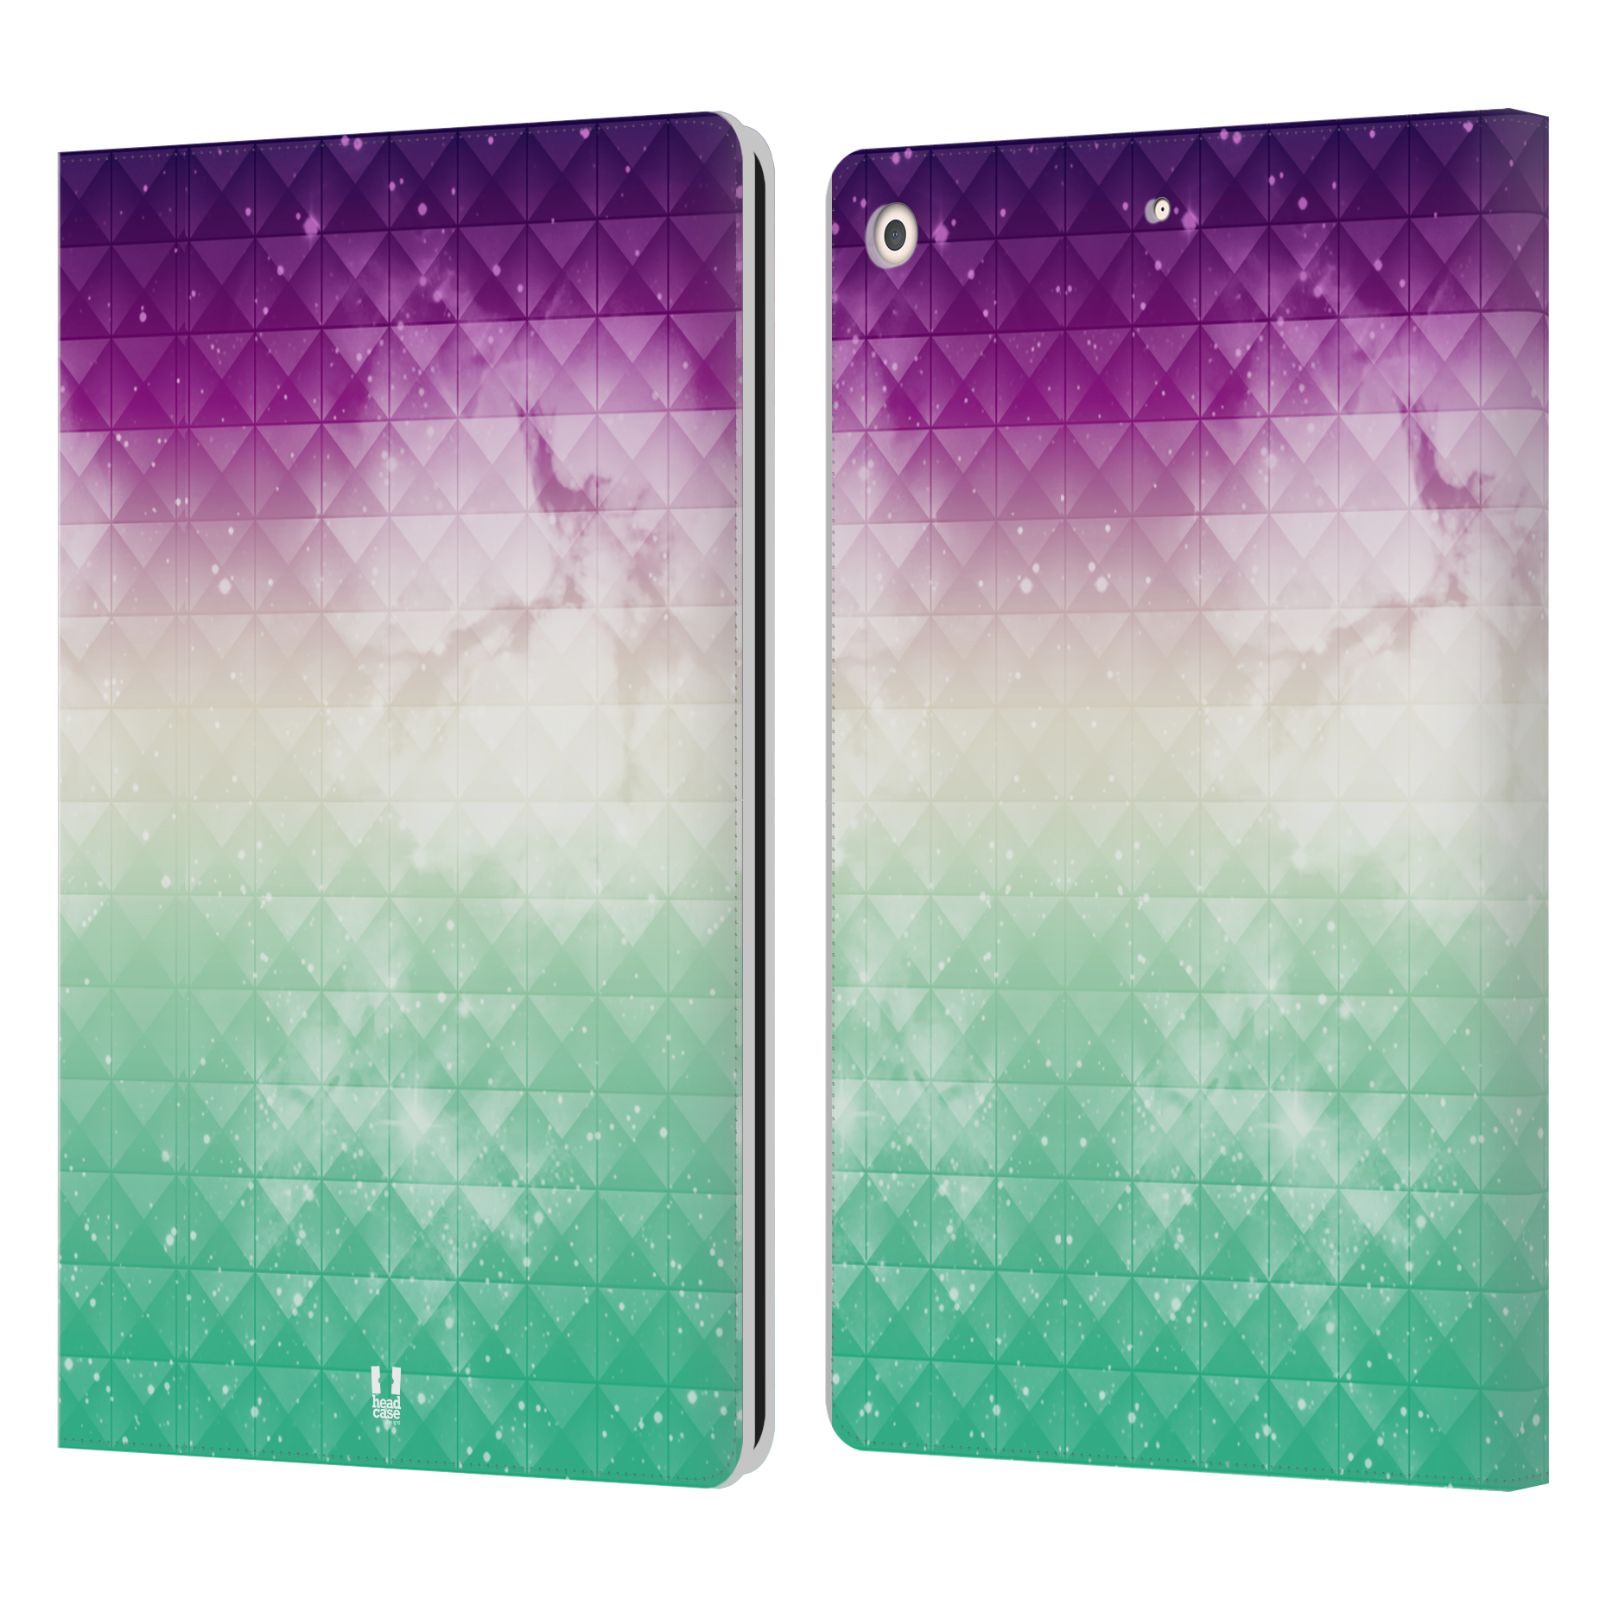 Pouzdro pro tablet Apple Ipad 10.2 - HEAD CASE - barevná vesmírná mlhovina fialová a zelená